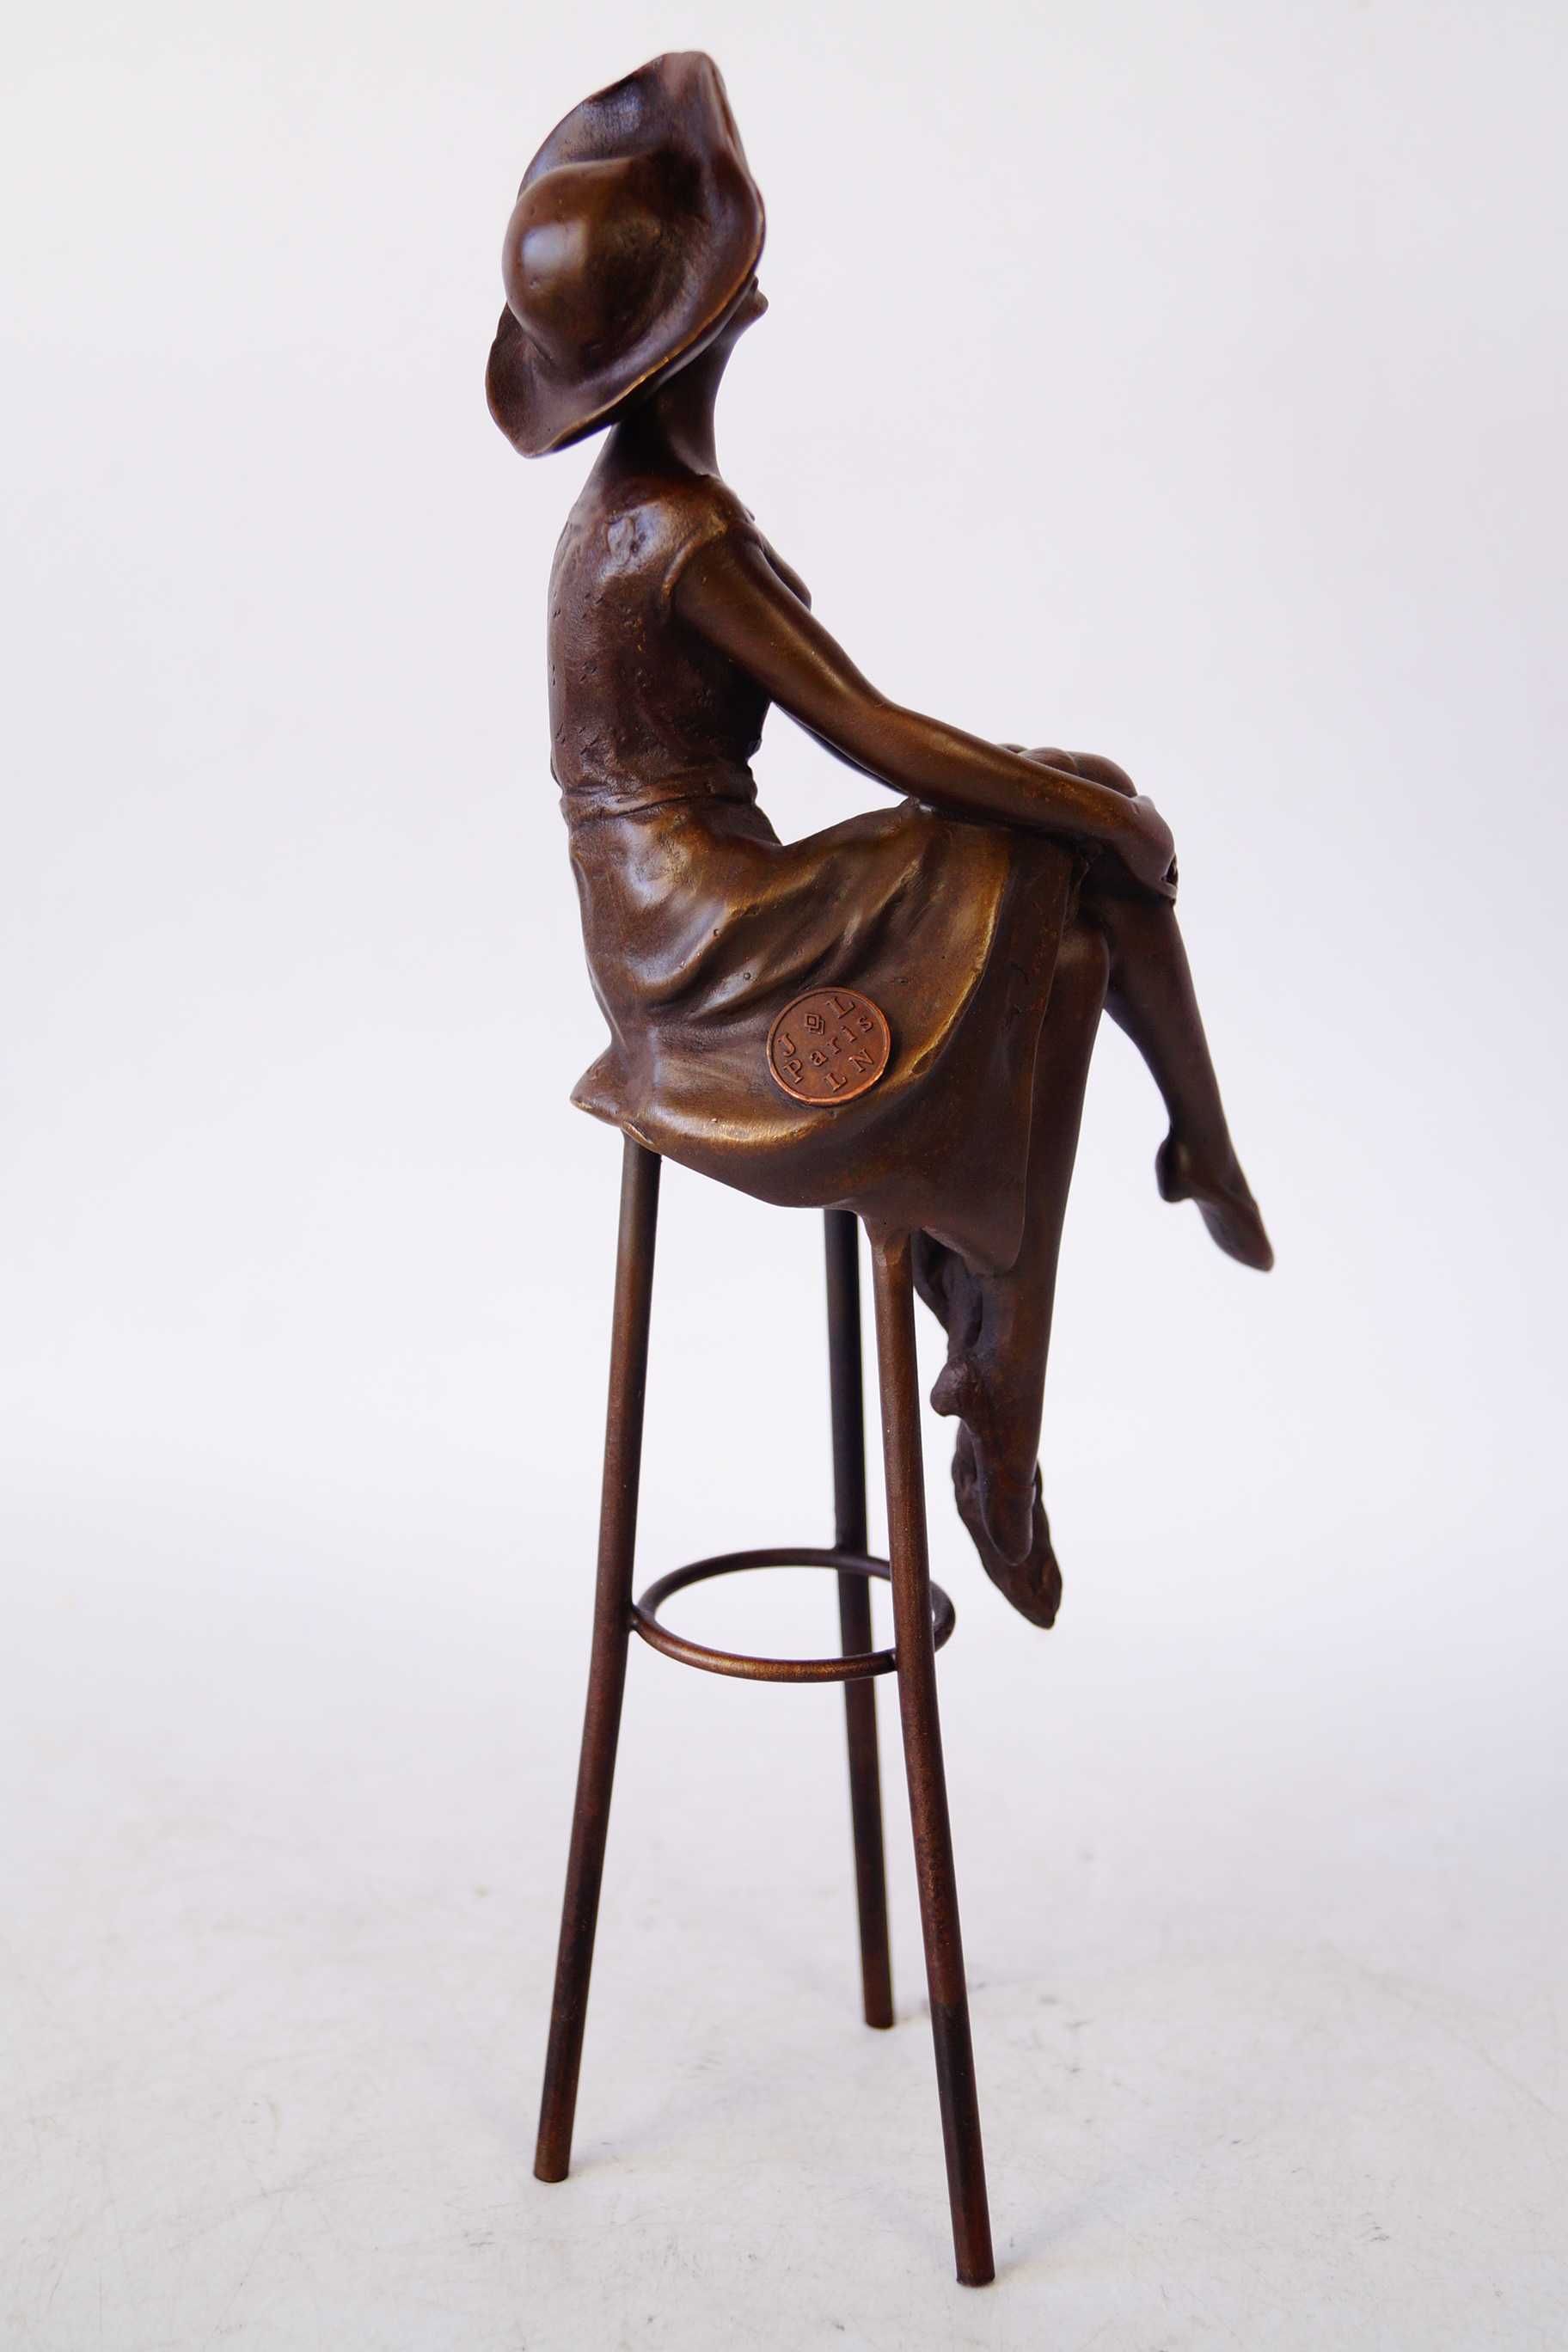 Dama na krześle figura z brązu rzeźba piękna Paris